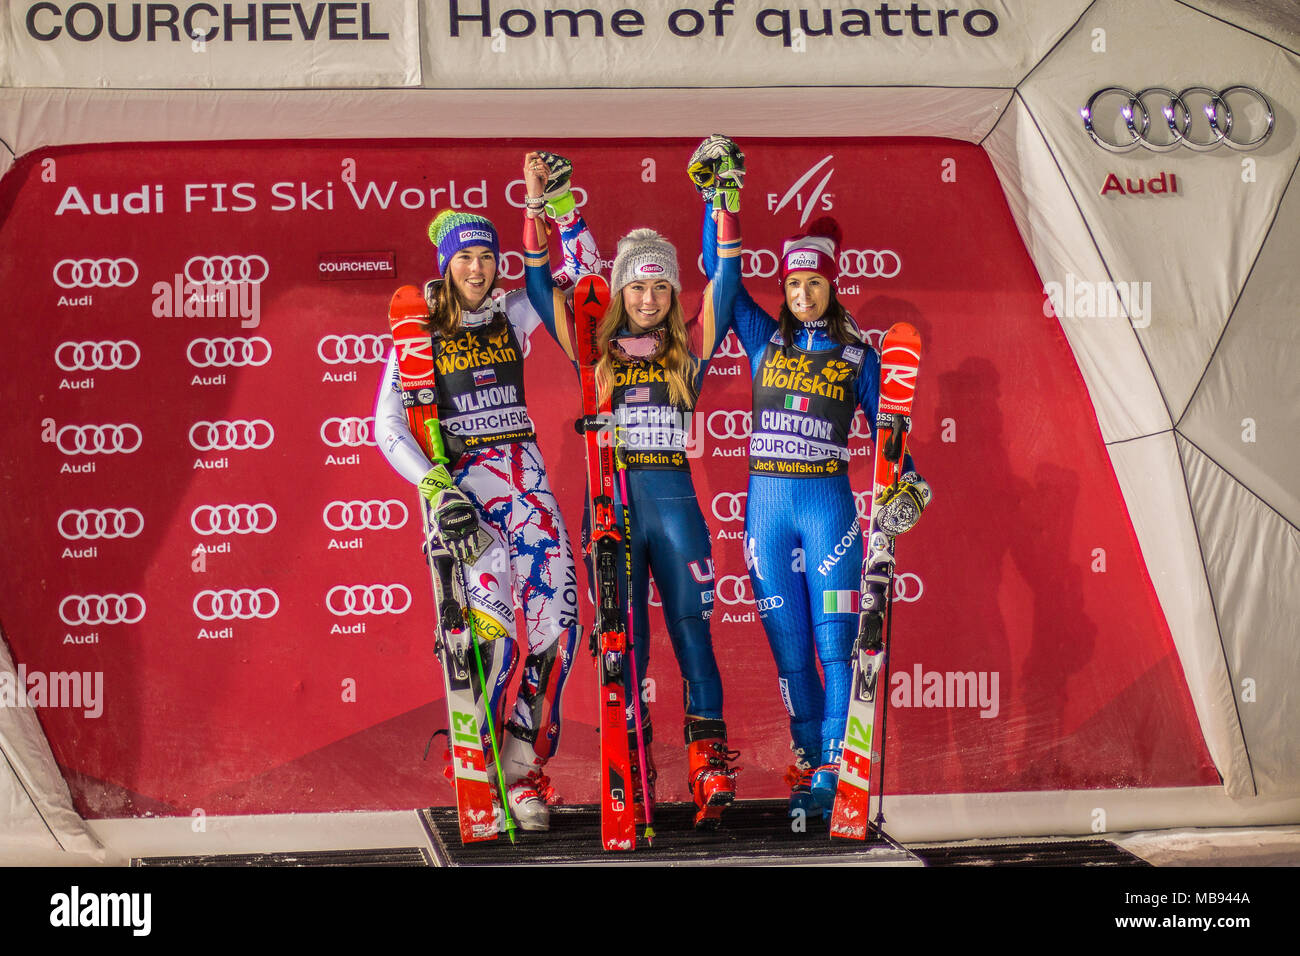 20 décembre 2017, Courchevel, Savoie, France, Mikaela Shiffrin de Usa vainqueur du slalom parallèle de Courchevel Ski Dames podium Coupe du monde présent Banque D'Images